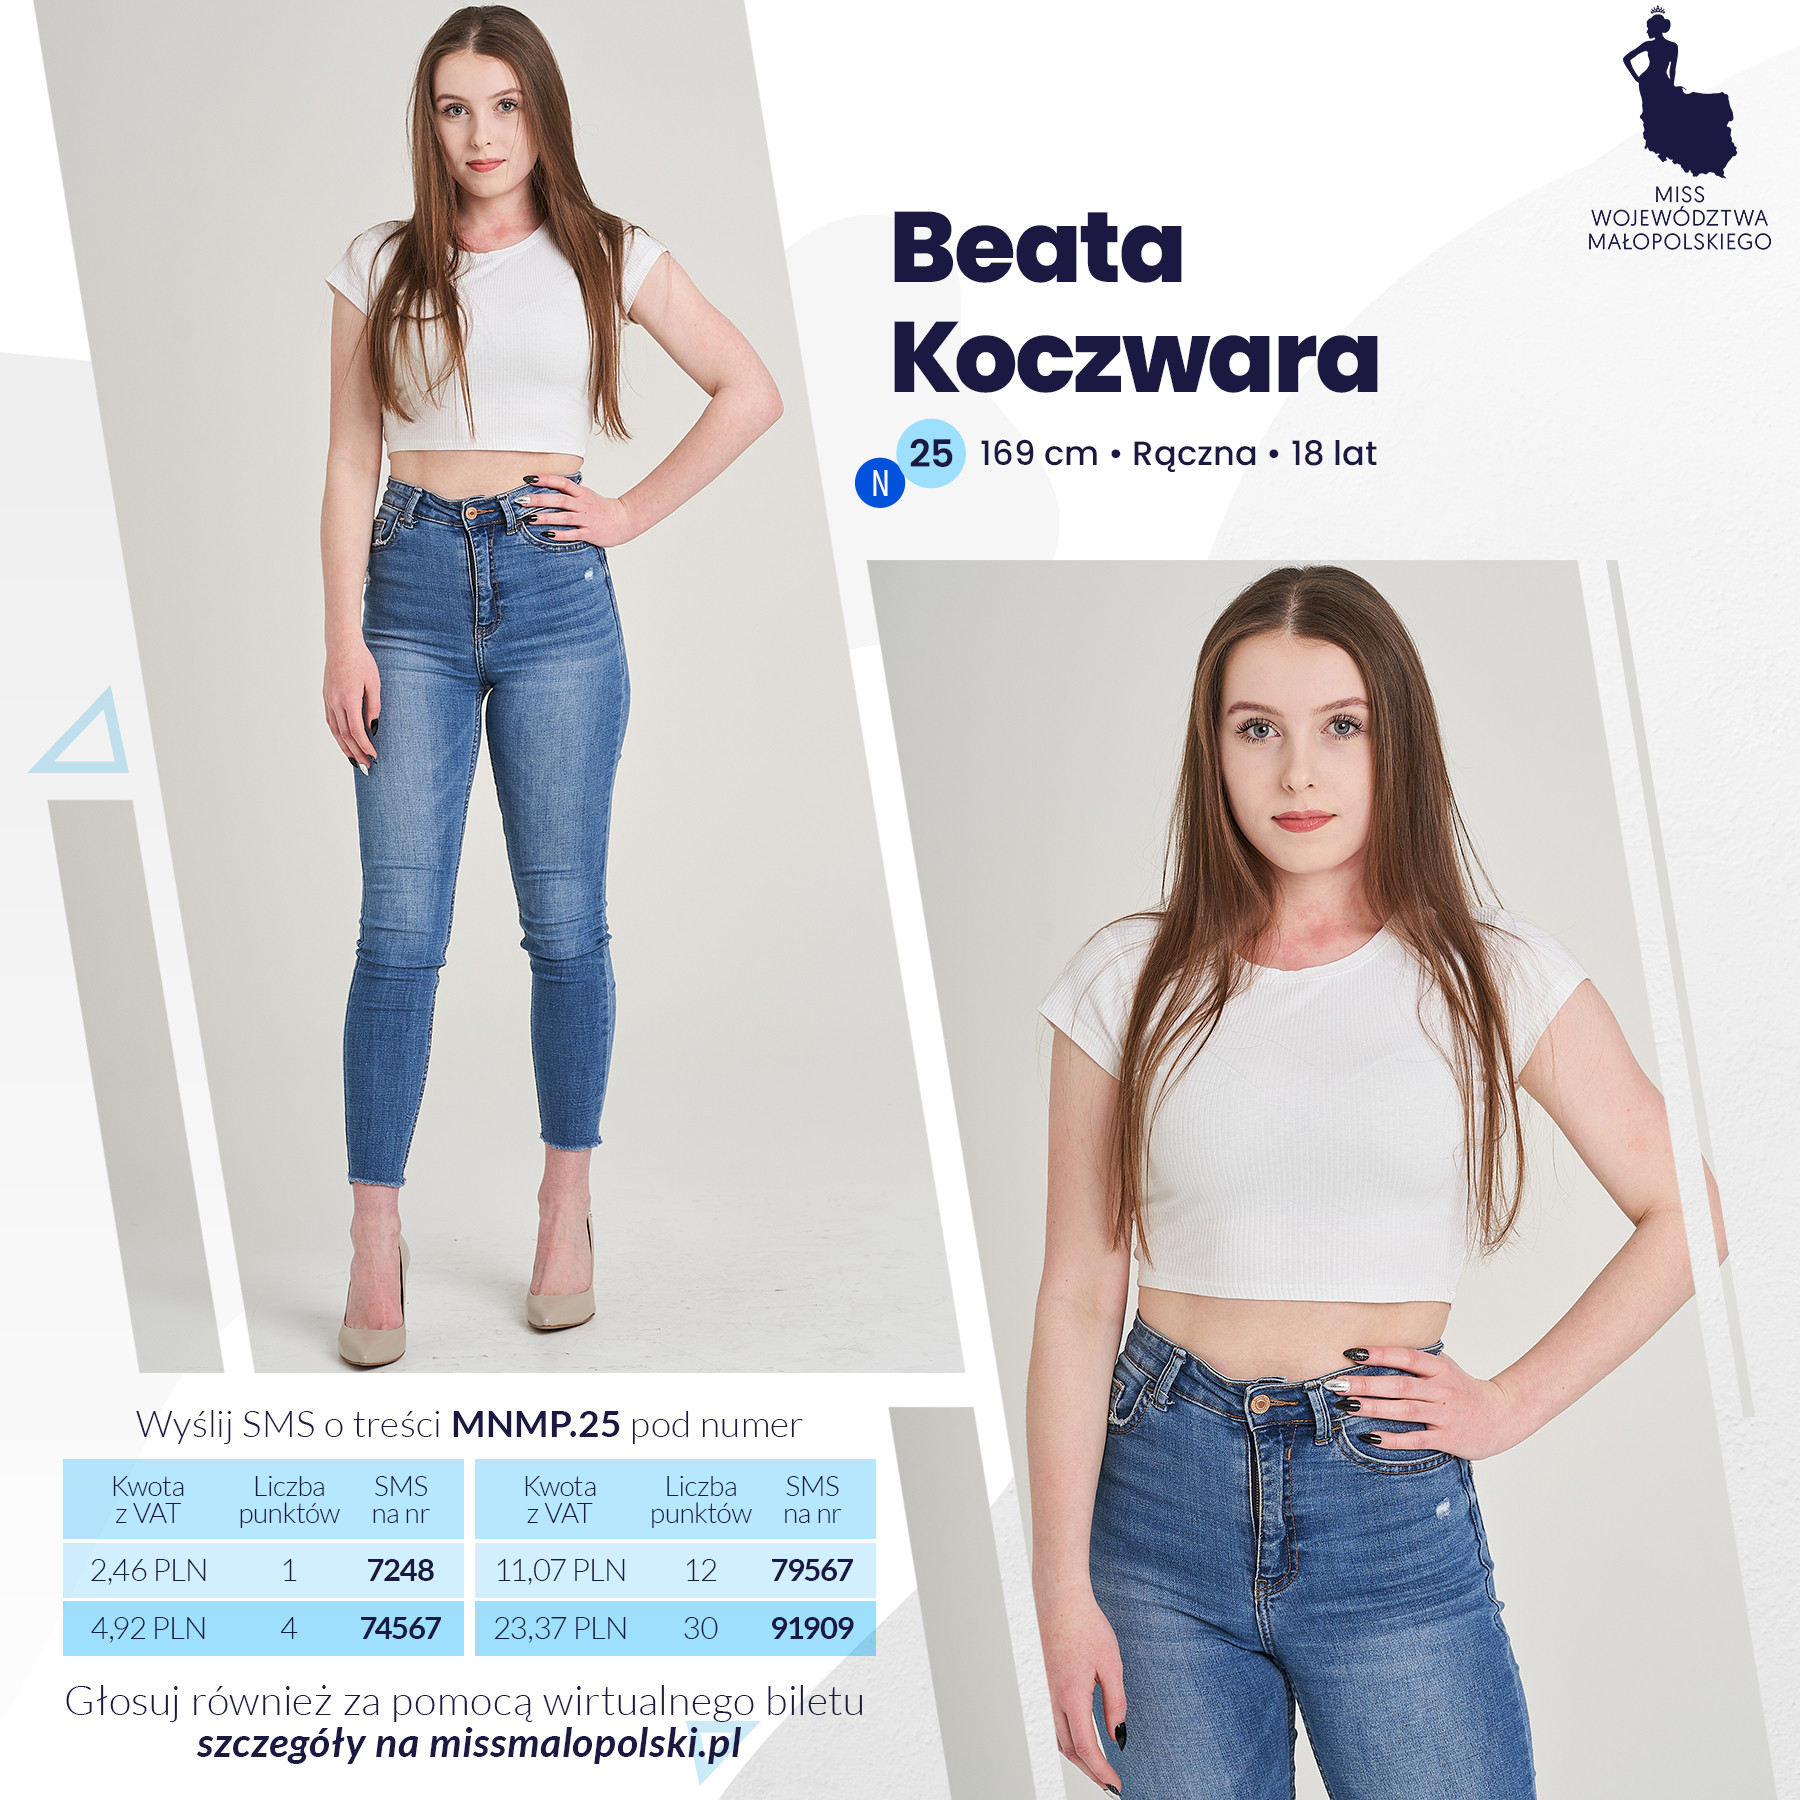 Beata Koczwara z Rącznej - kandydatka na Miss Województwa Małopolskiego 2022 - plakat